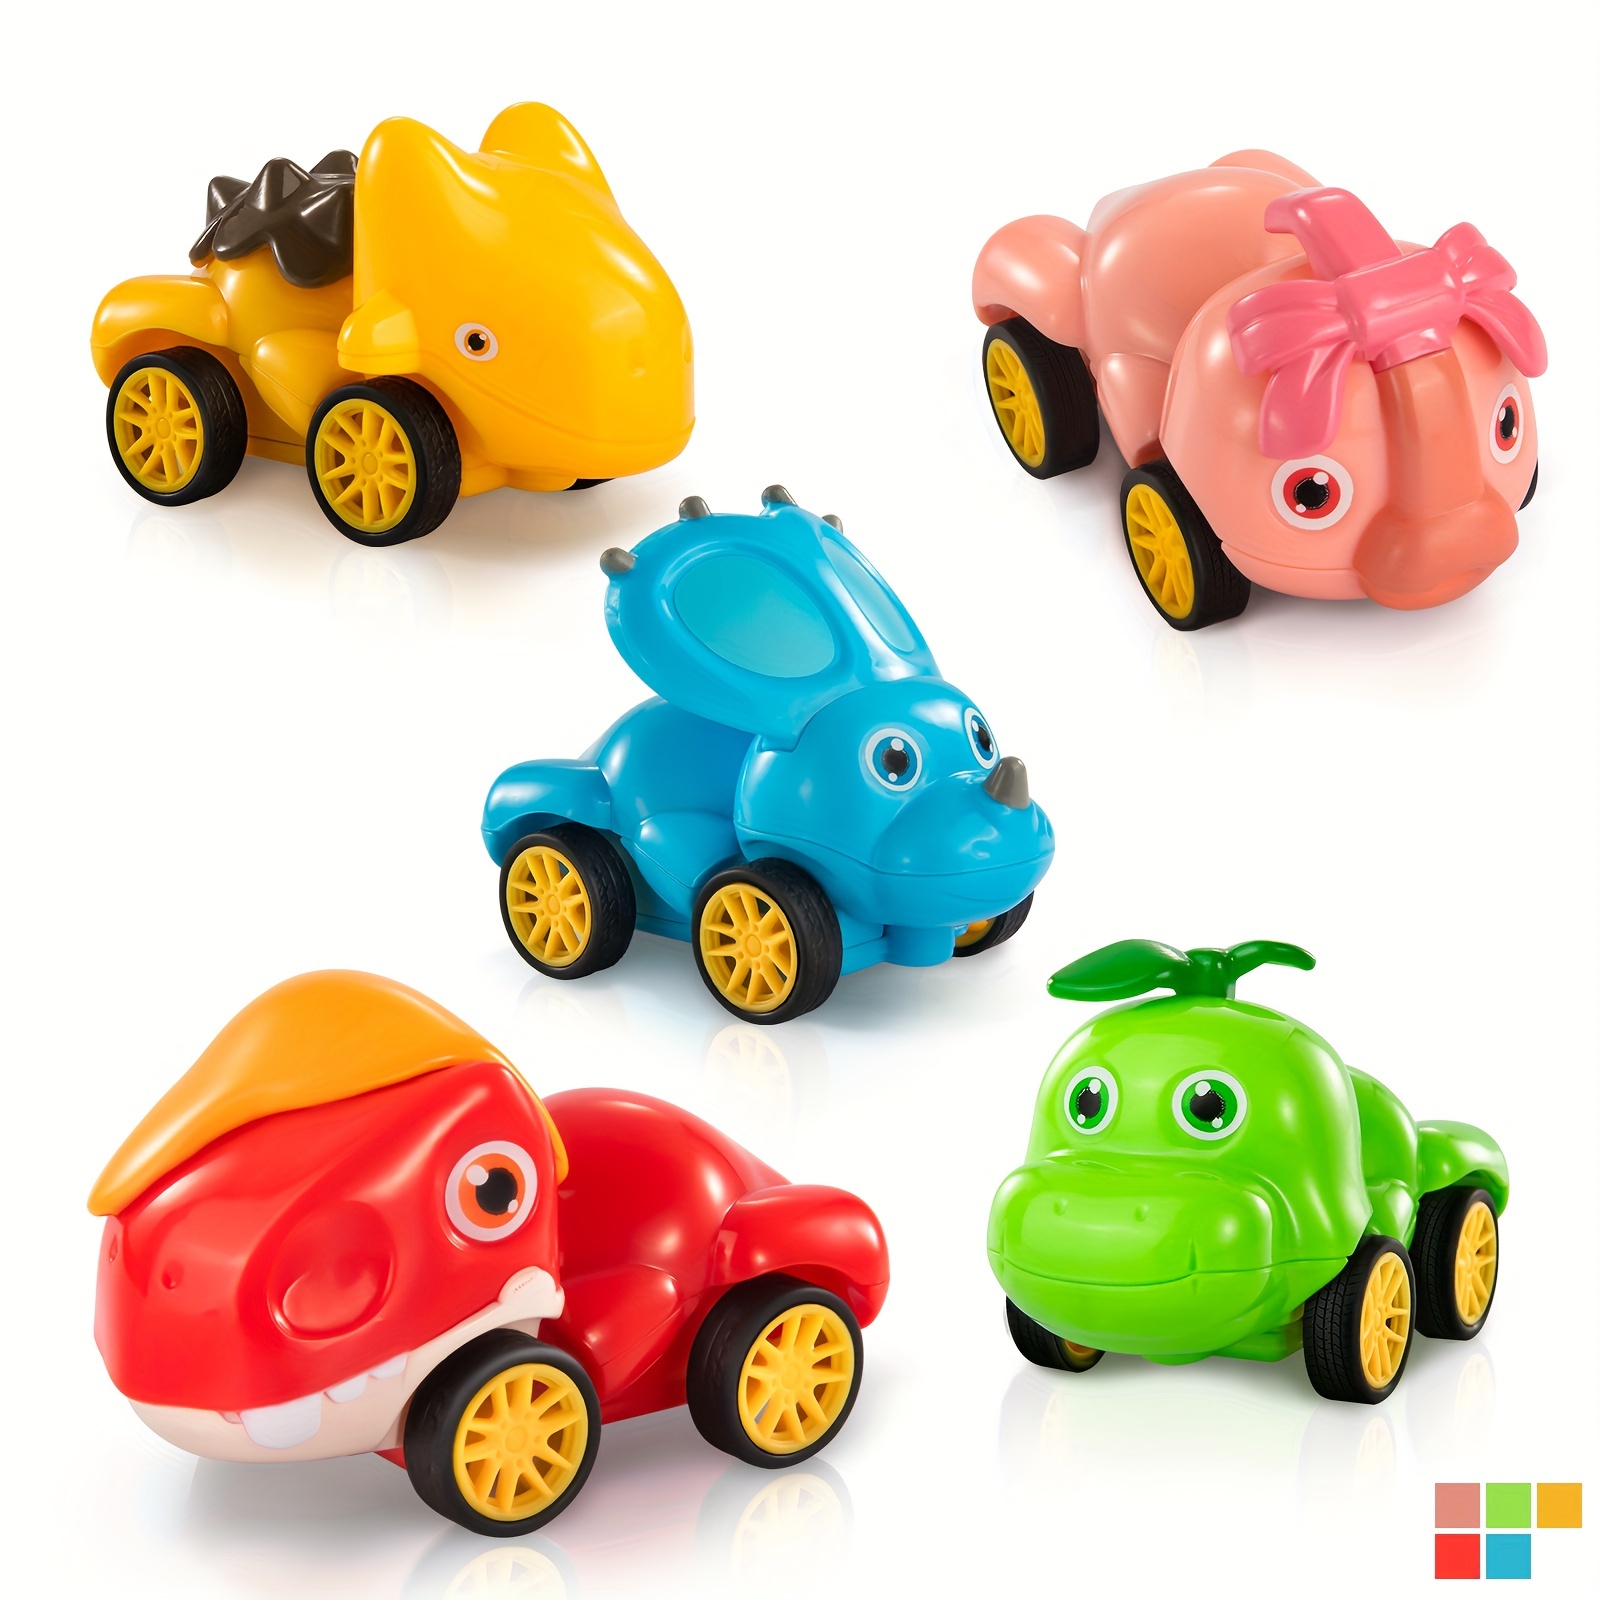  Autos de juguete para niños de 1 año, juguetes para